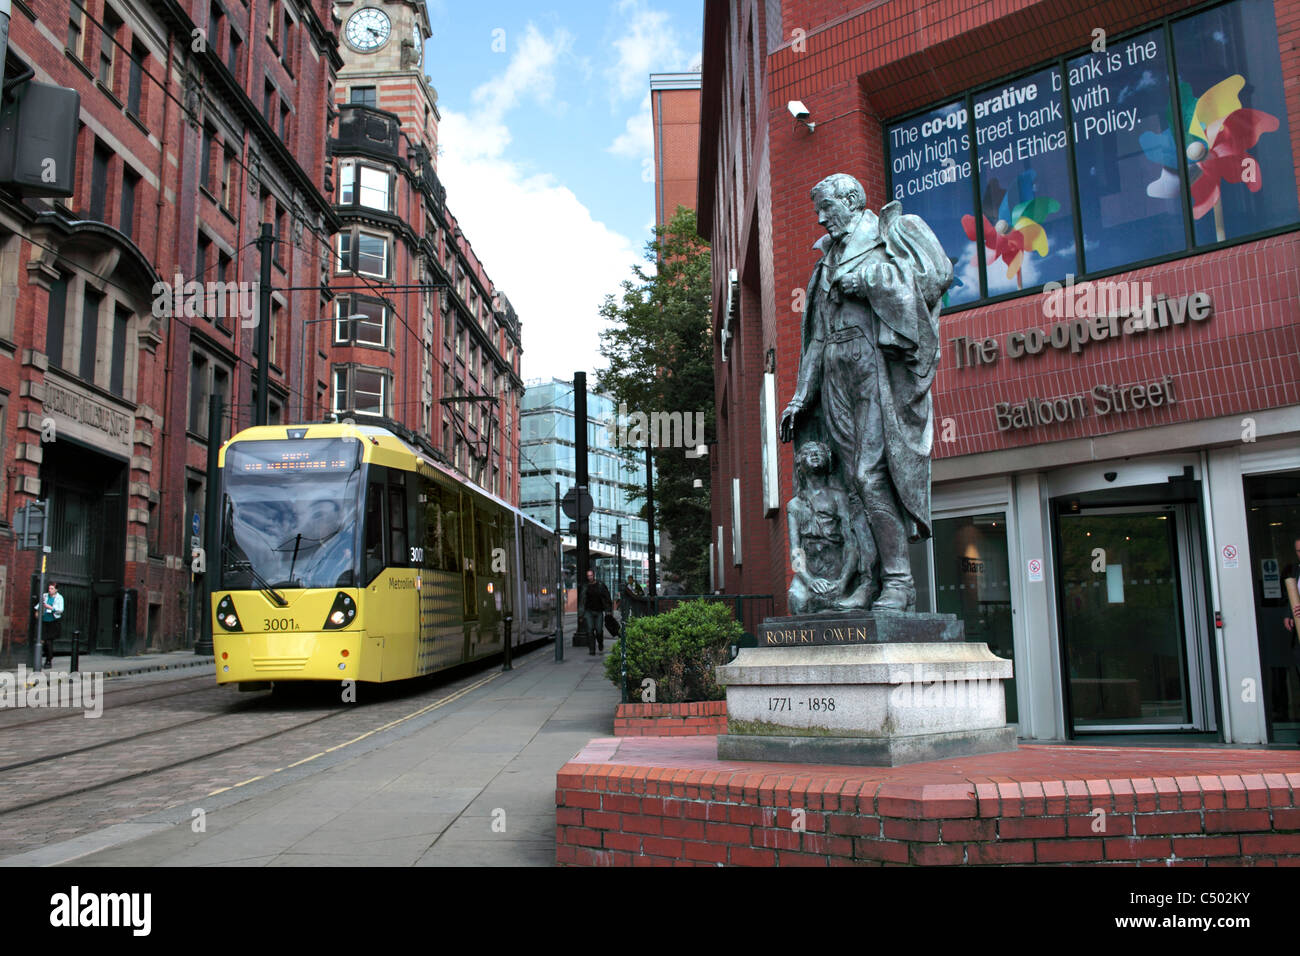 Un tram passant une statue de Robert Owen en dehors de la Co-op Bank sur les Ballons Street, Manchester. Banque D'Images